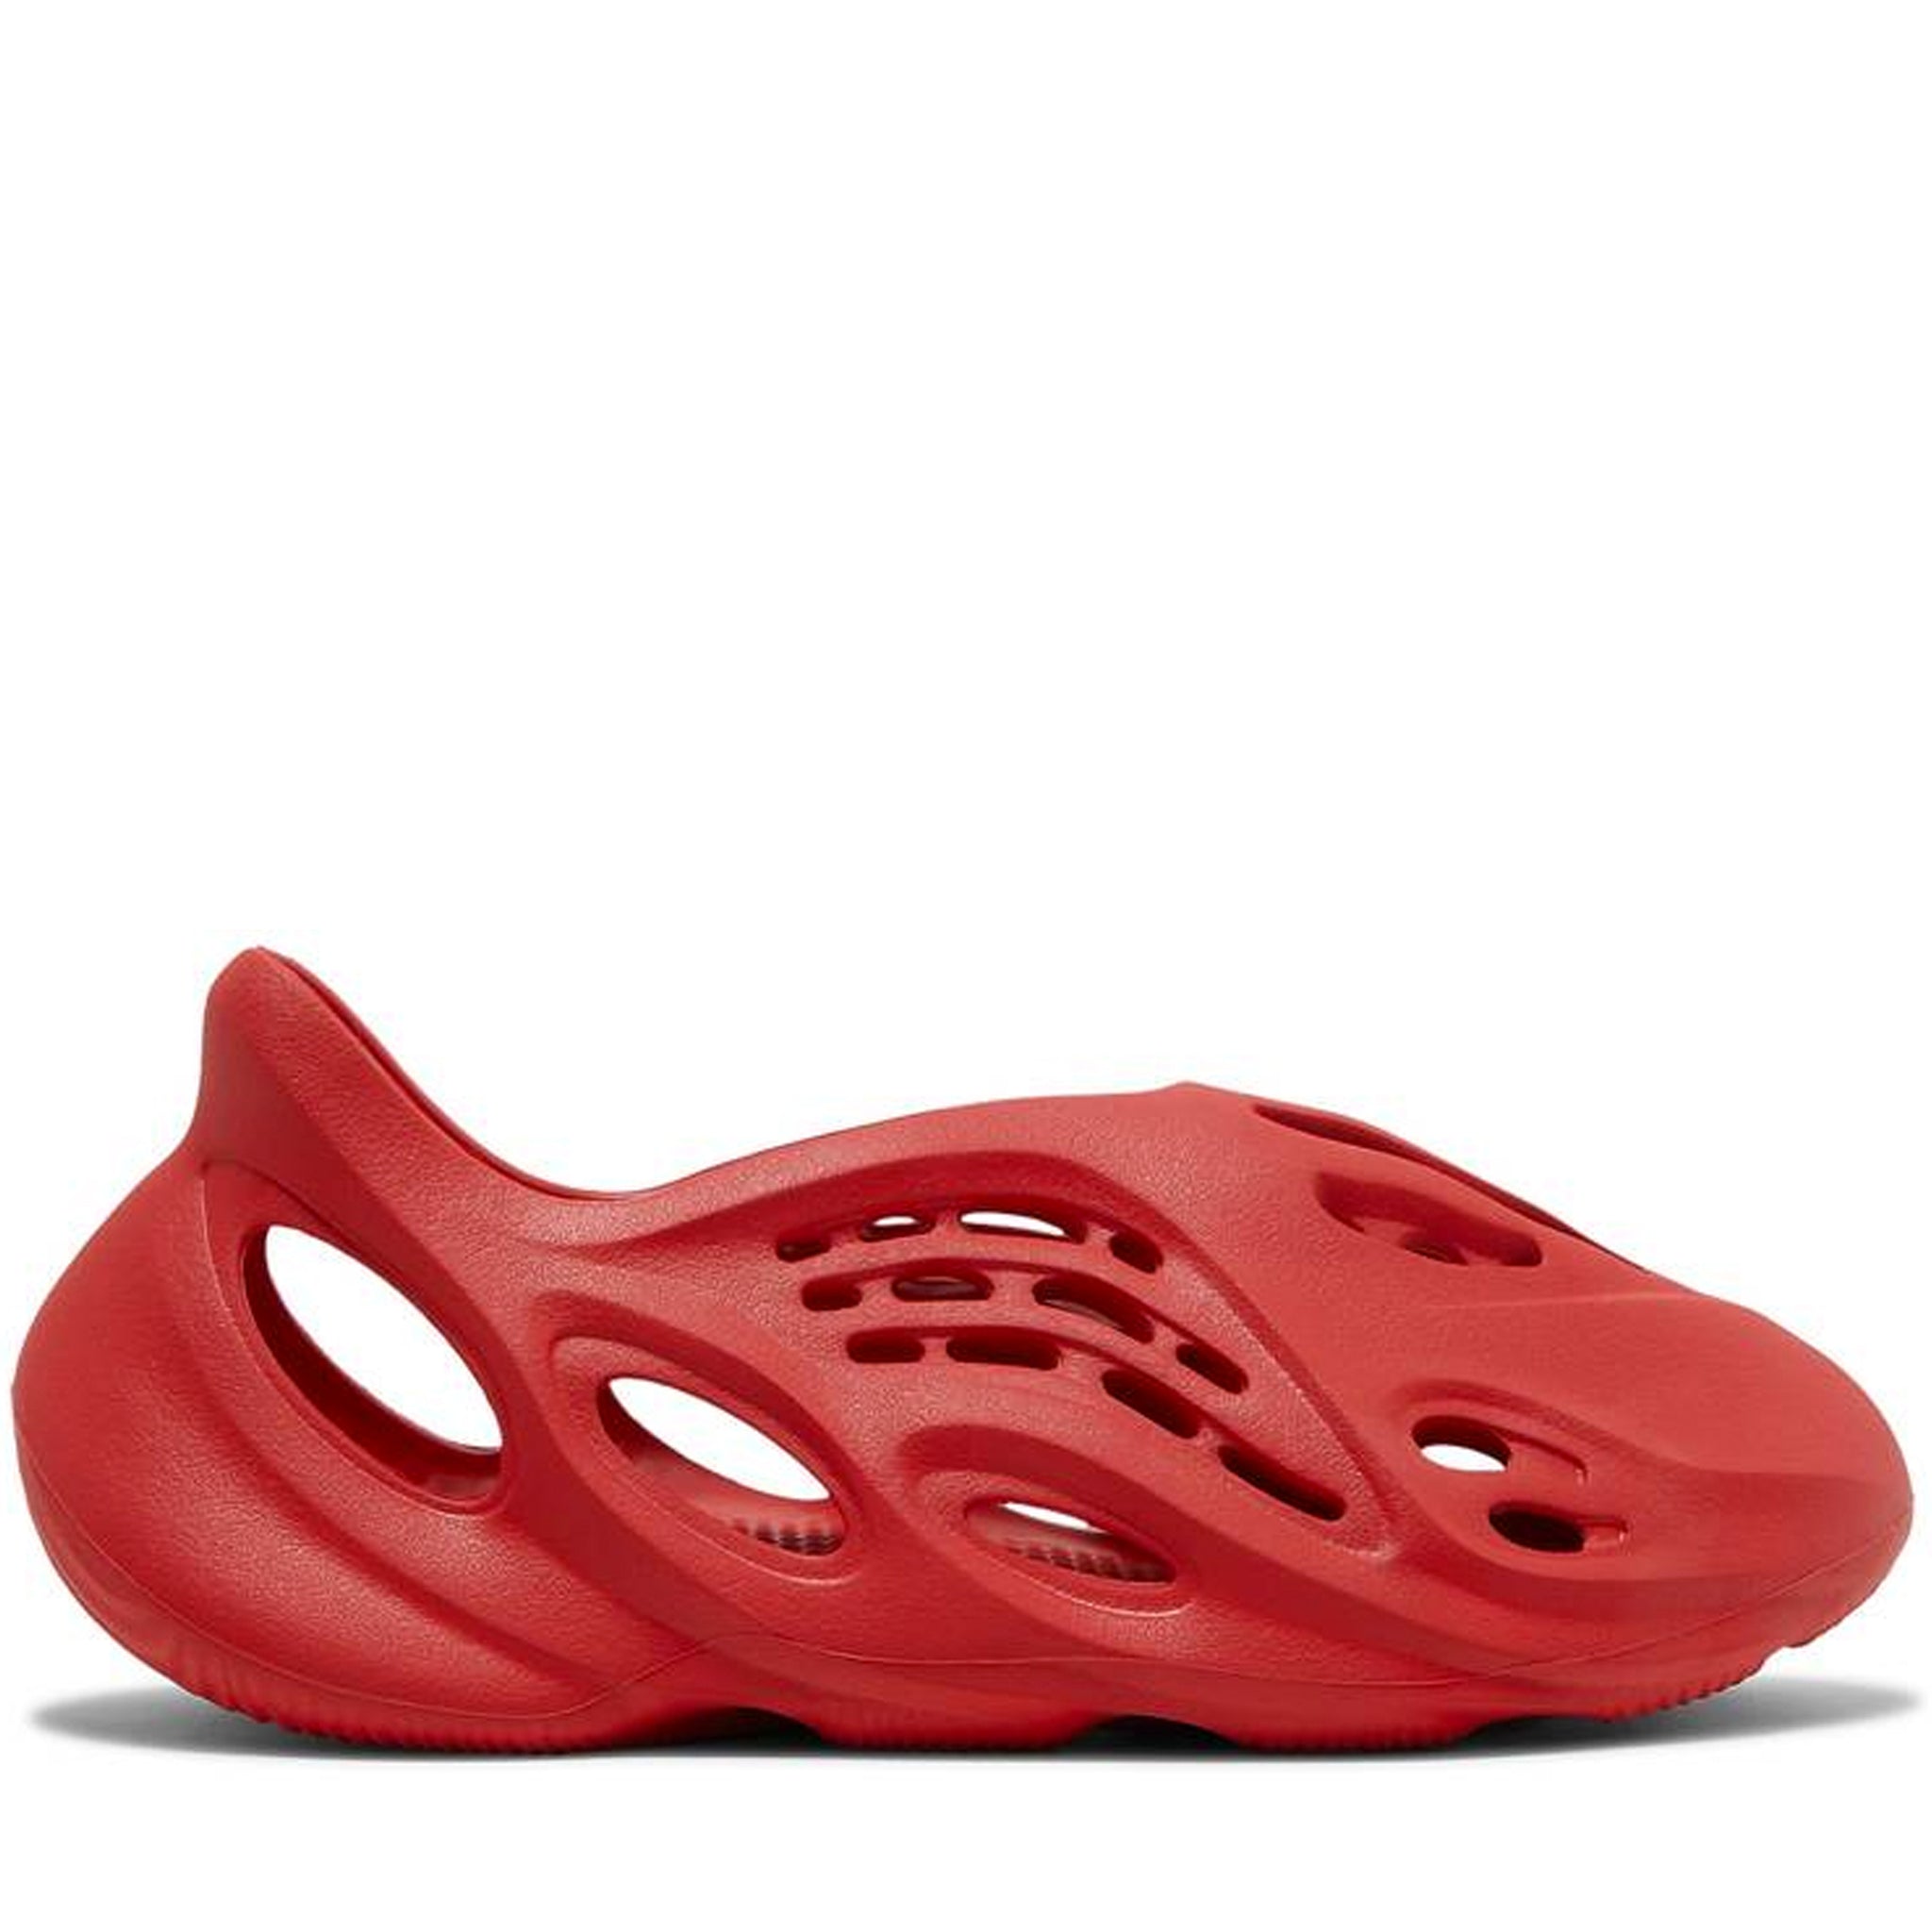 高価値セリー Foam YEEZY 新品 adidas Runner 21cm Onyx サンダル 